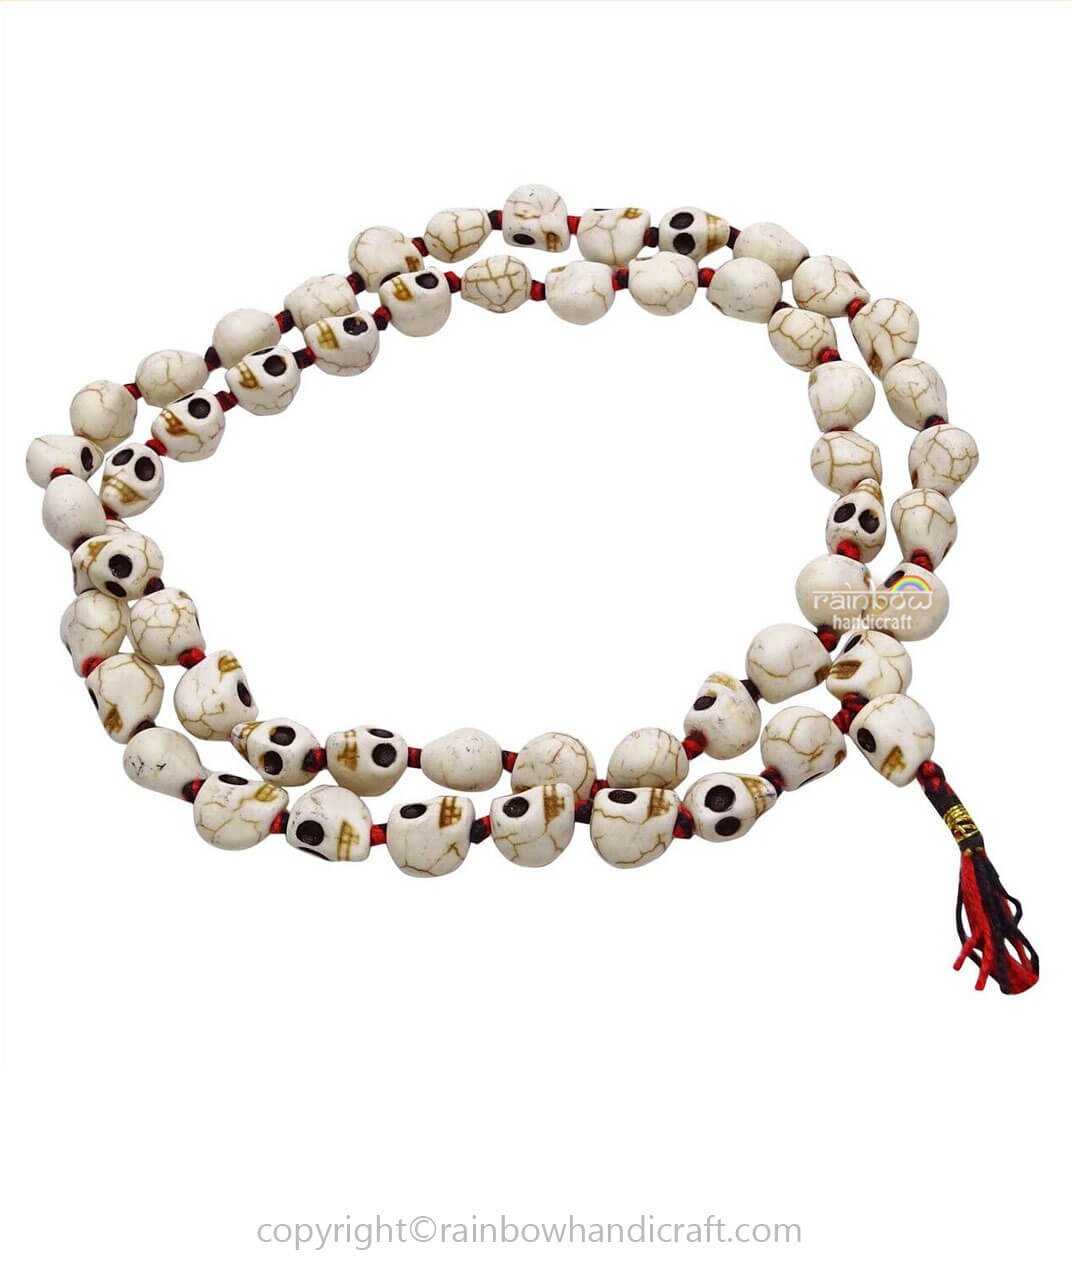 Tibetan Prayer Shamballa Halloween All Soul's Beads Skull Bracelet multi  Coloured - Etsy